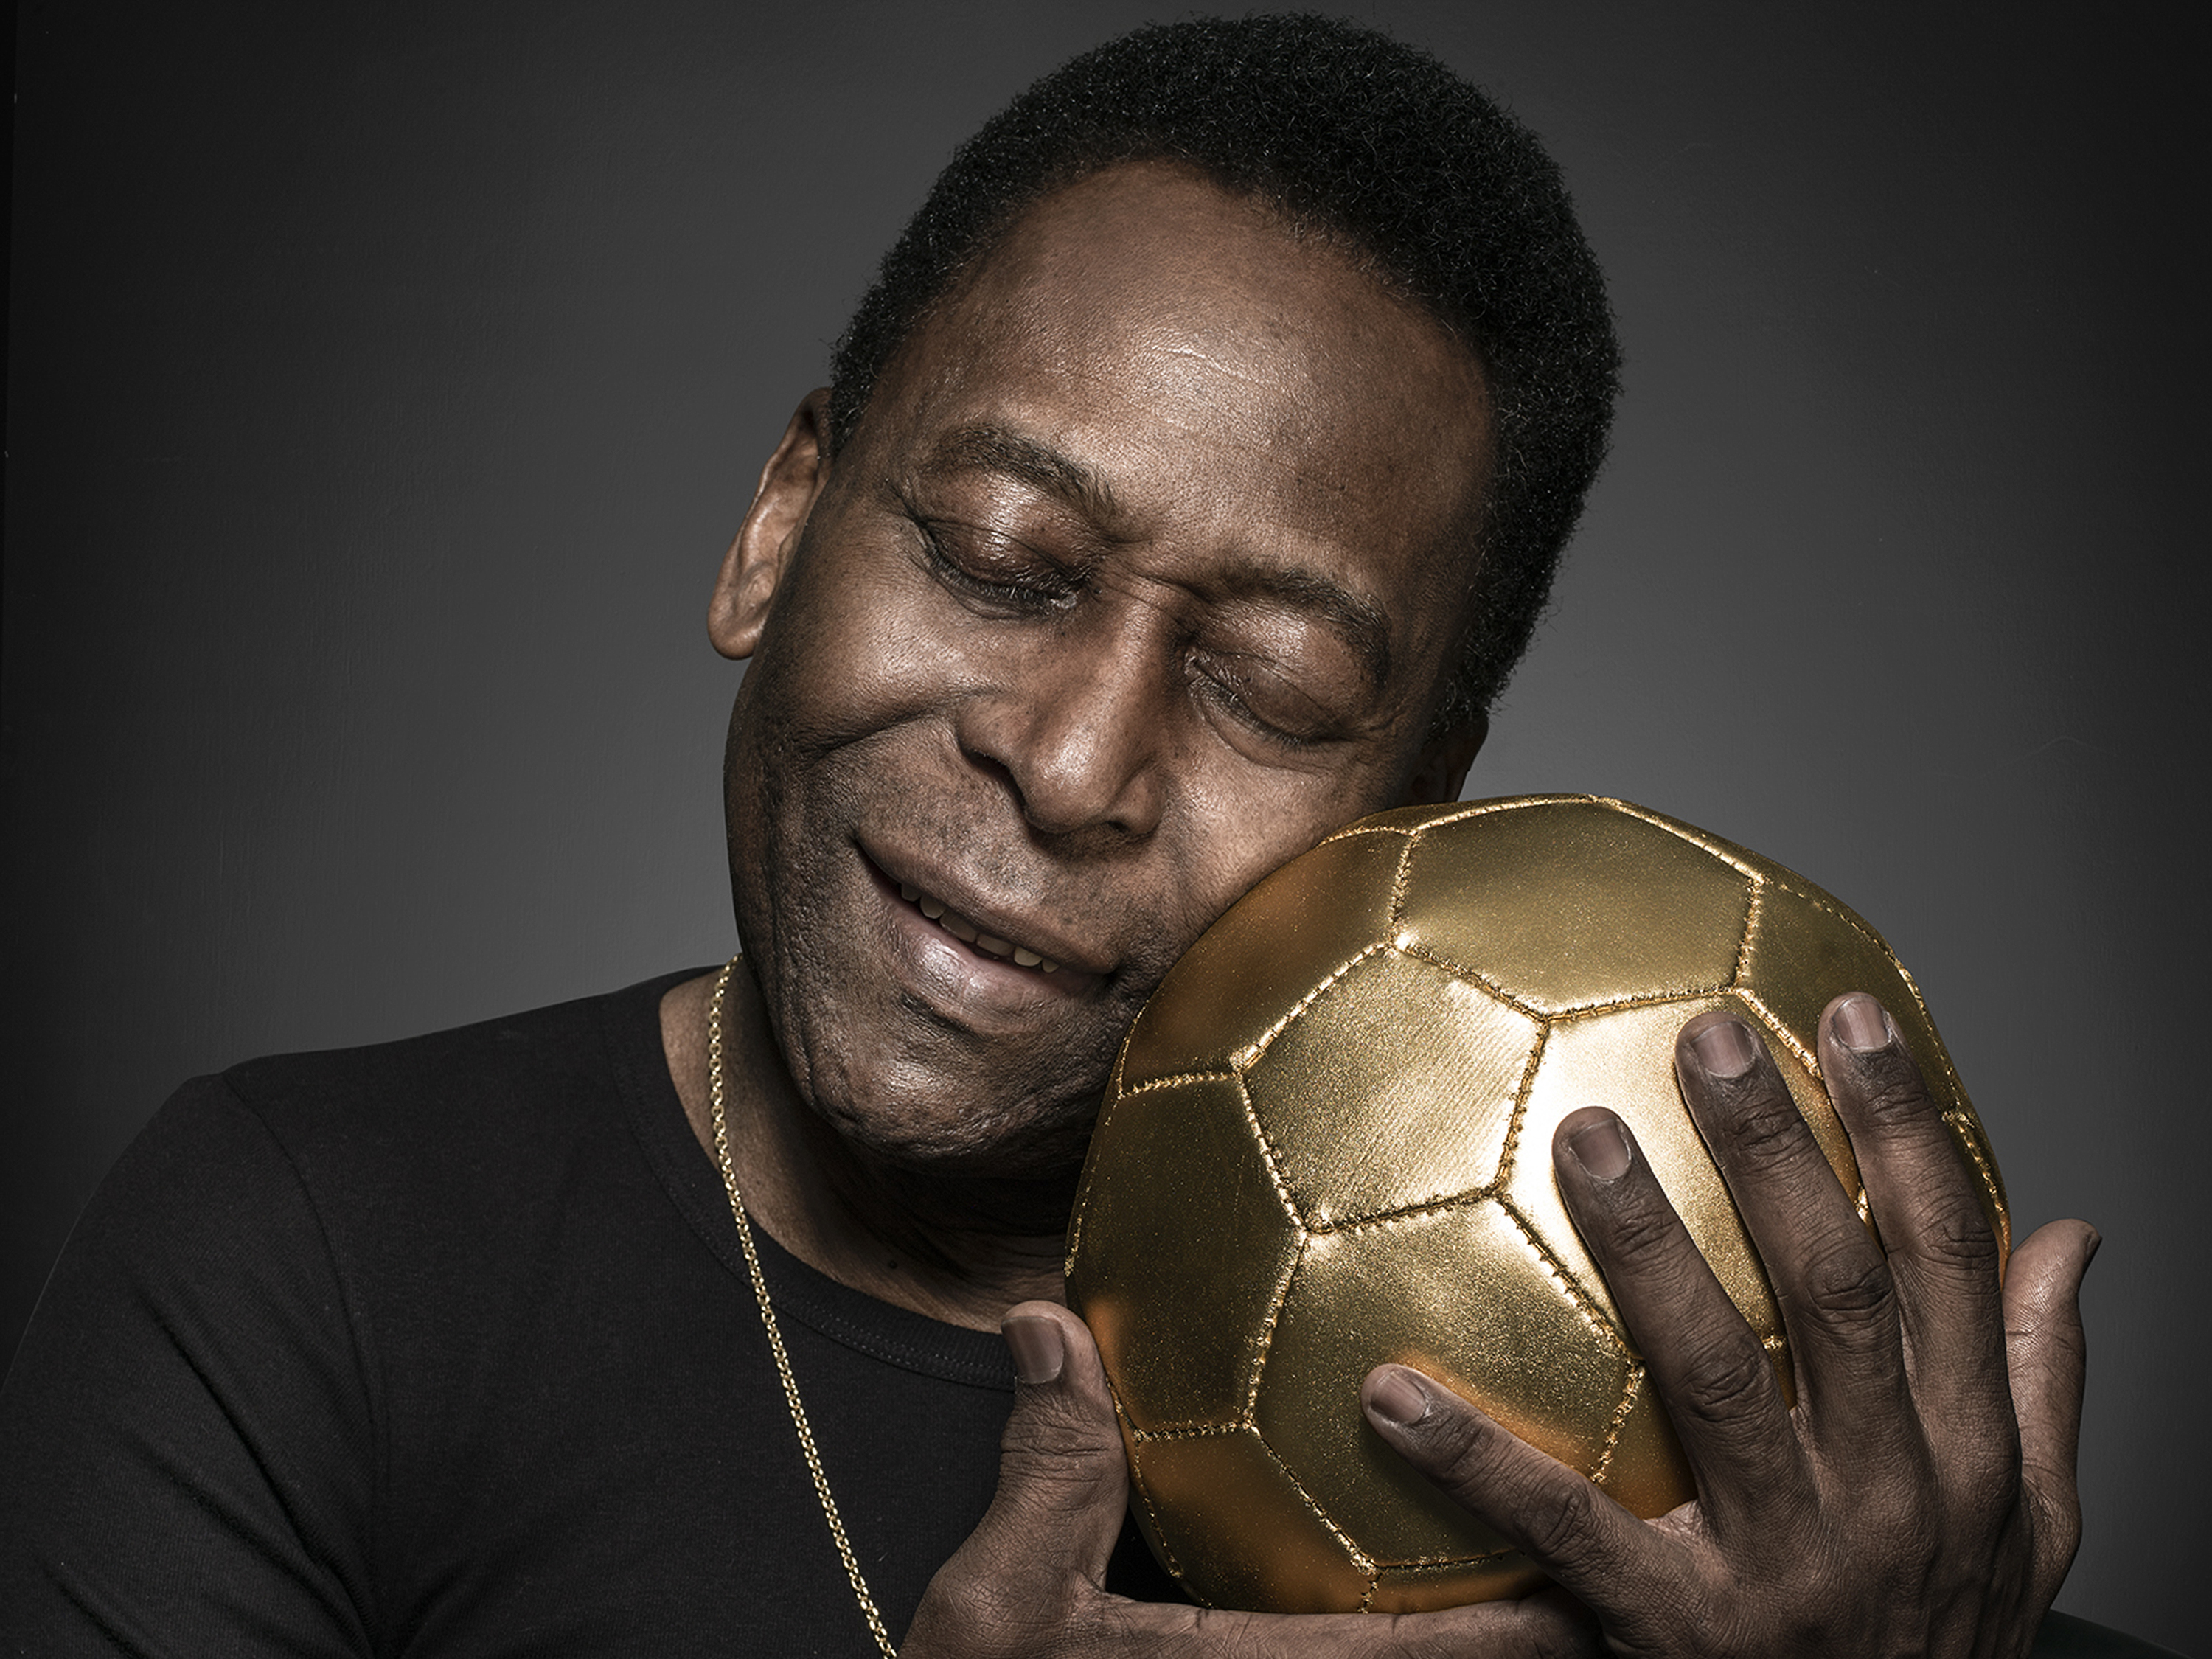 1970's Edson Arantes do Nascimento, conhecido como Pelé, considerado por  muitos o maior futebolista da história. …